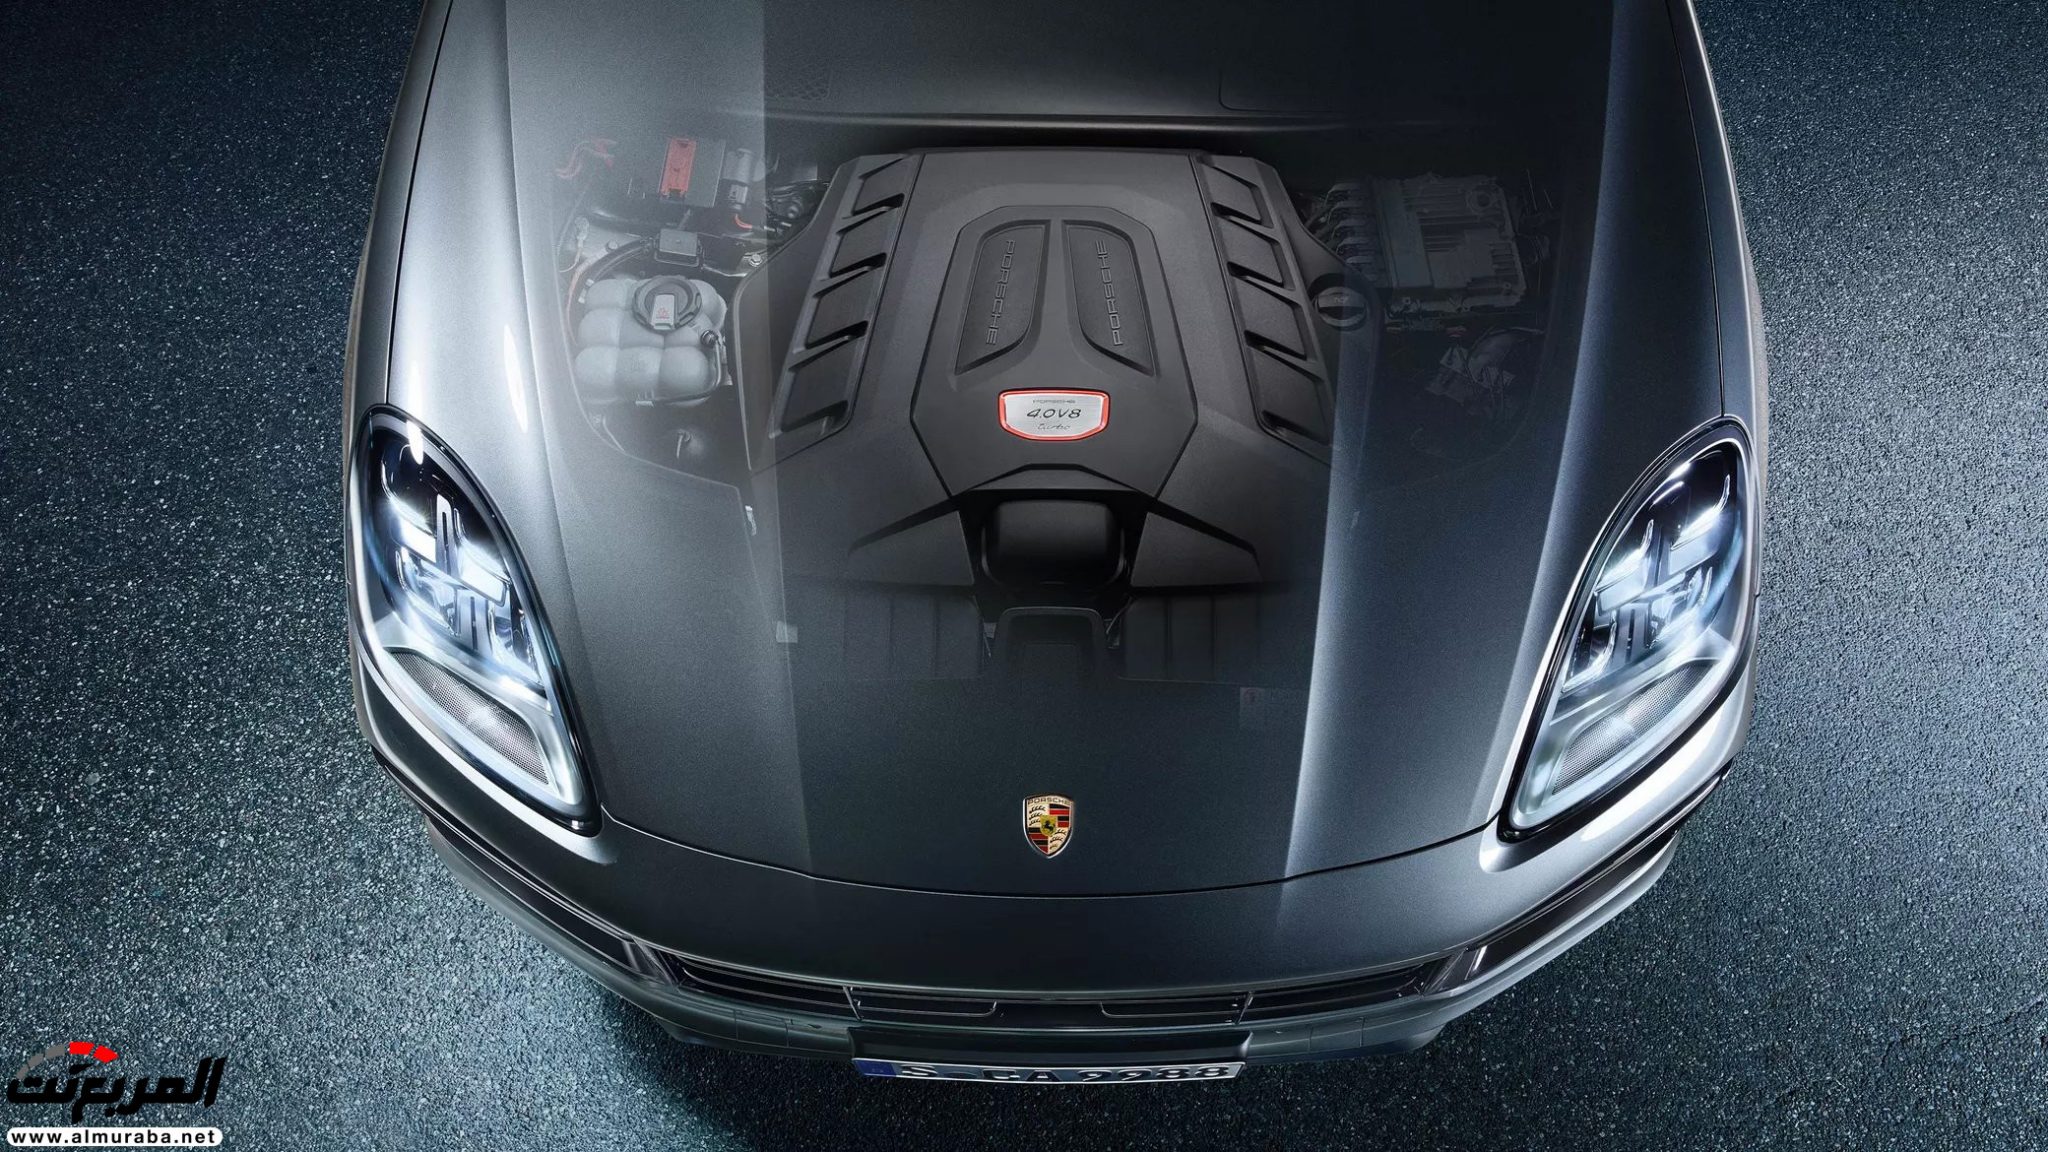 بورش كايين 2020 Porsche صور وأسعار ومواصفات المحرك 5